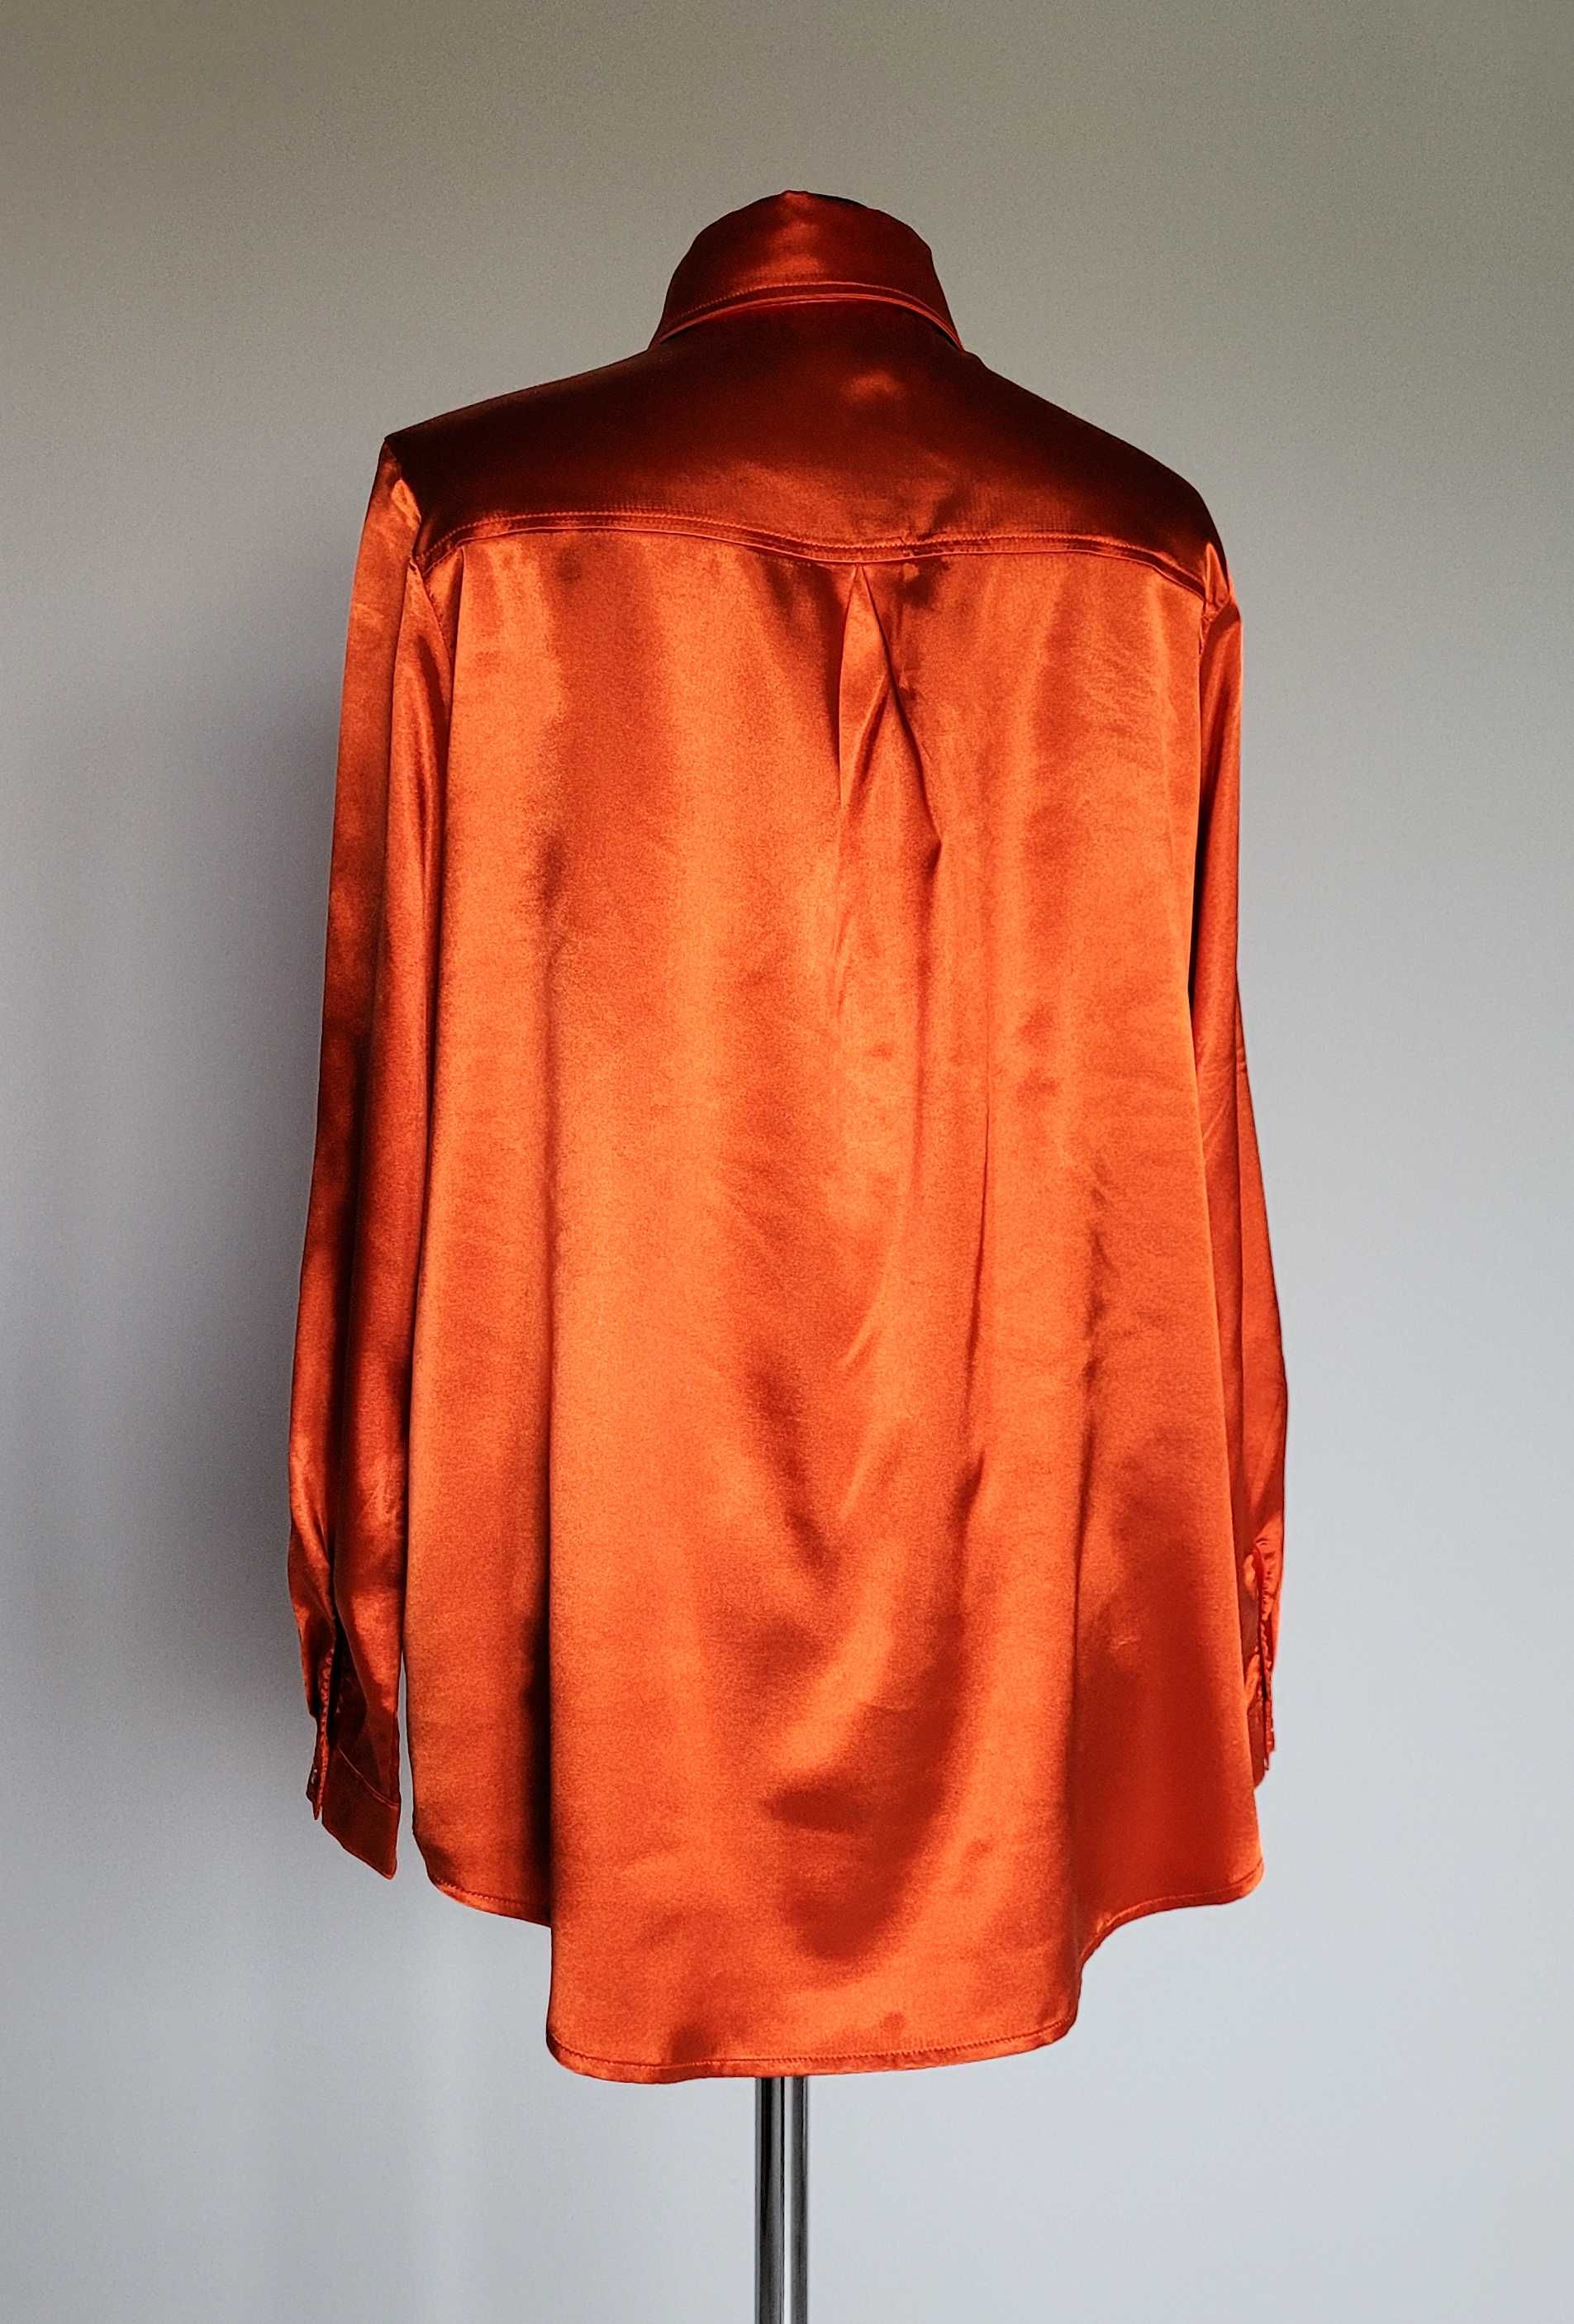 Satynowa pomarańczowa bluzka PrettyLittleThing XS/S/M